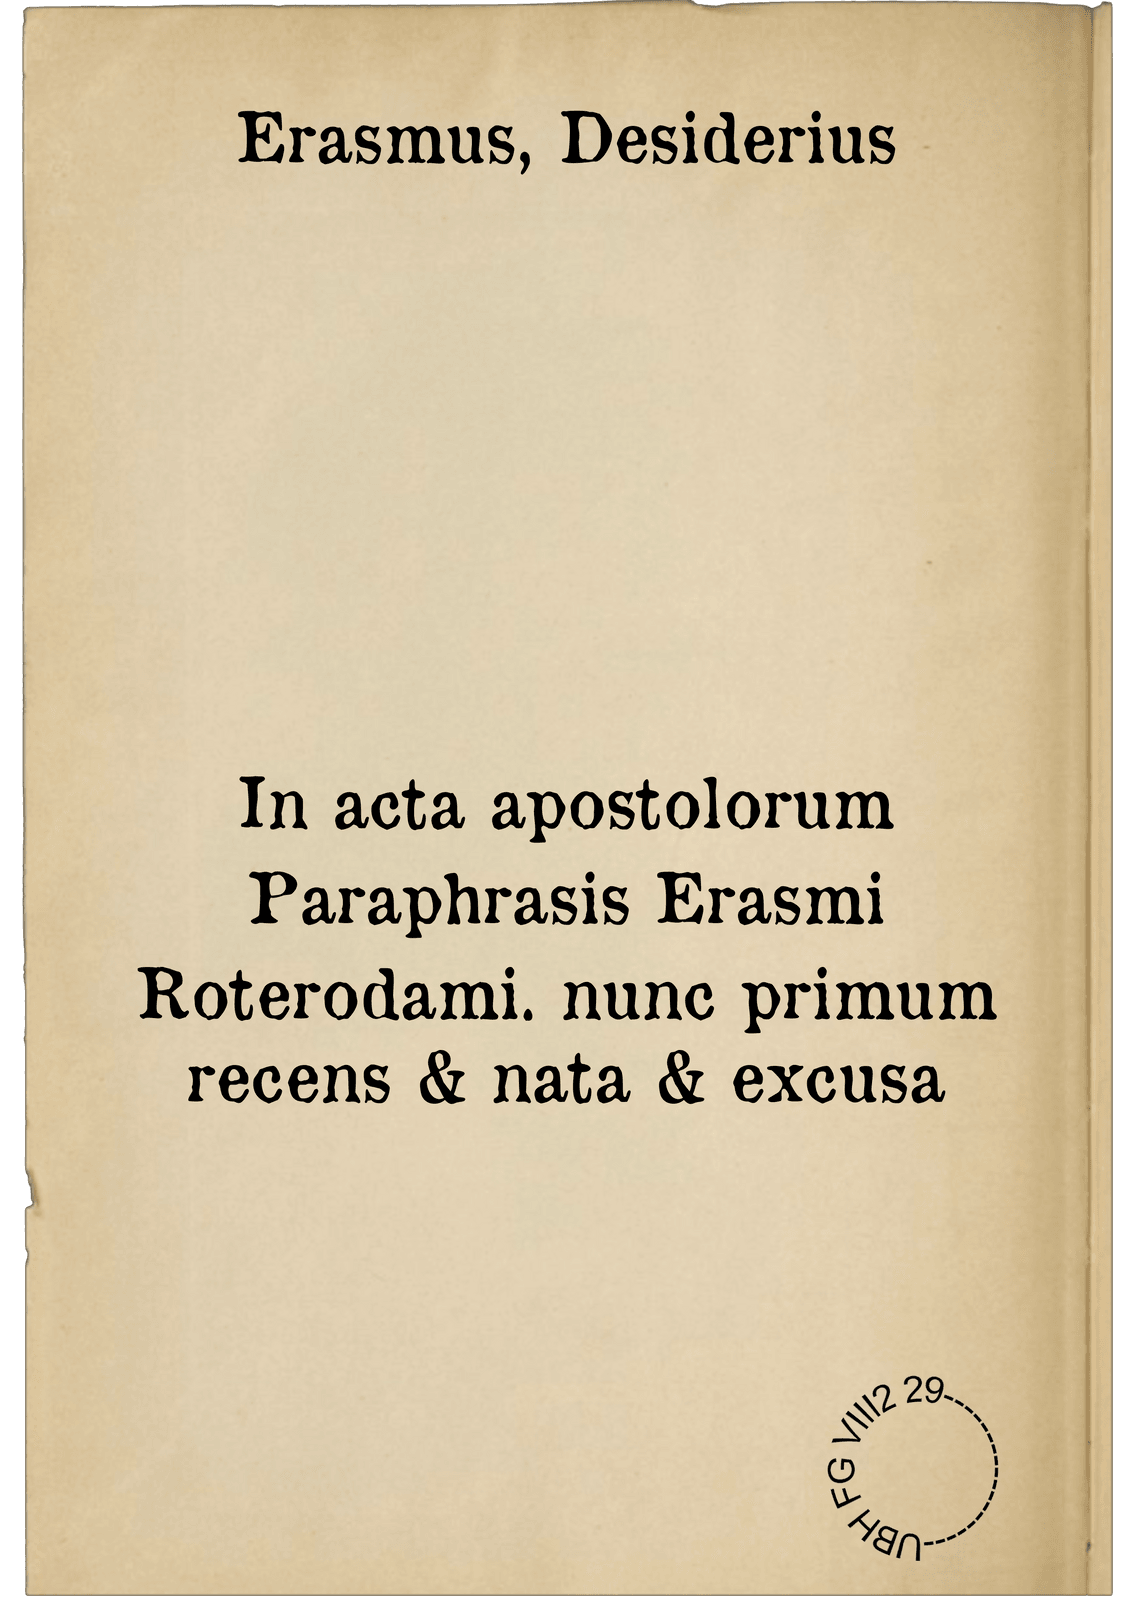 In acta apostolorum Paraphrasis Erasmi Roterodami. nunc primum recens & nata & excusa